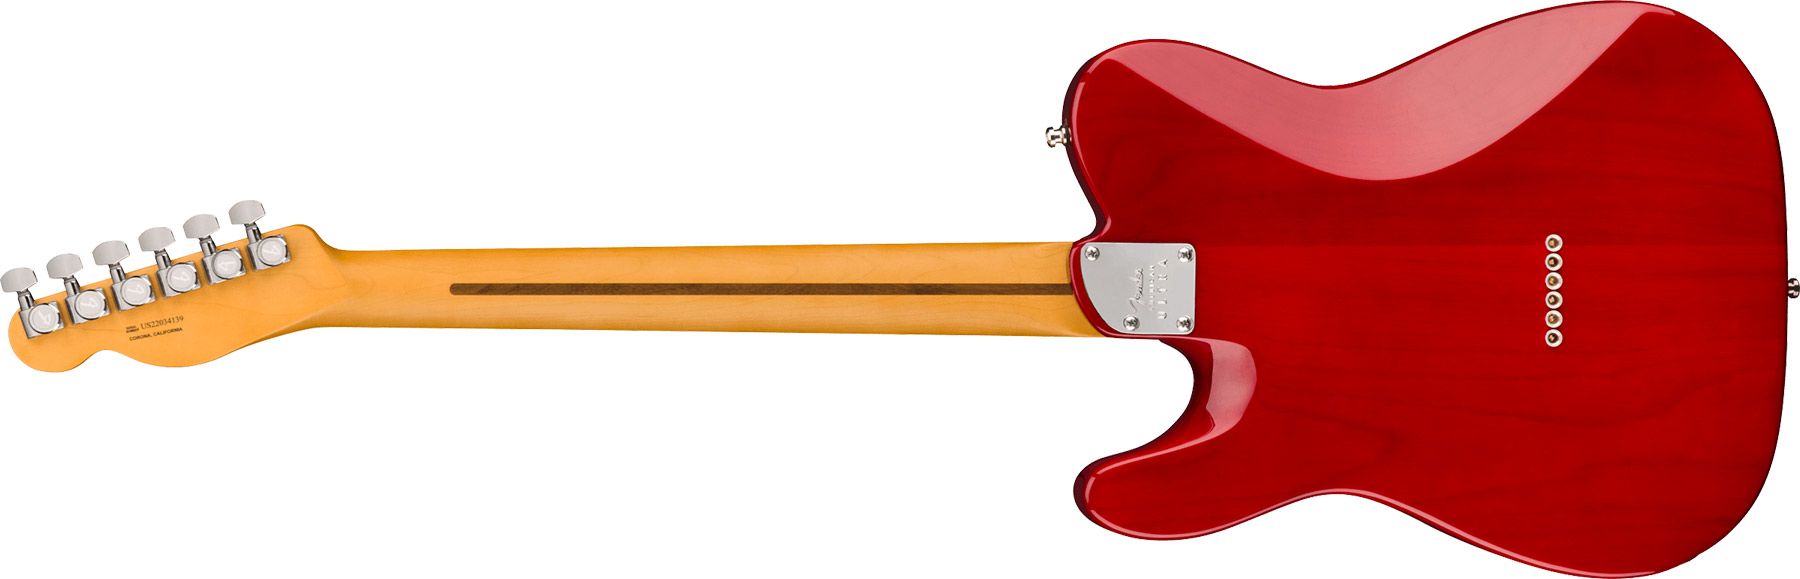 Fender Tele American Ultra Ltd Usa 2s Ht Eb - Umbra - E-Gitarre in Teleform - Variation 1